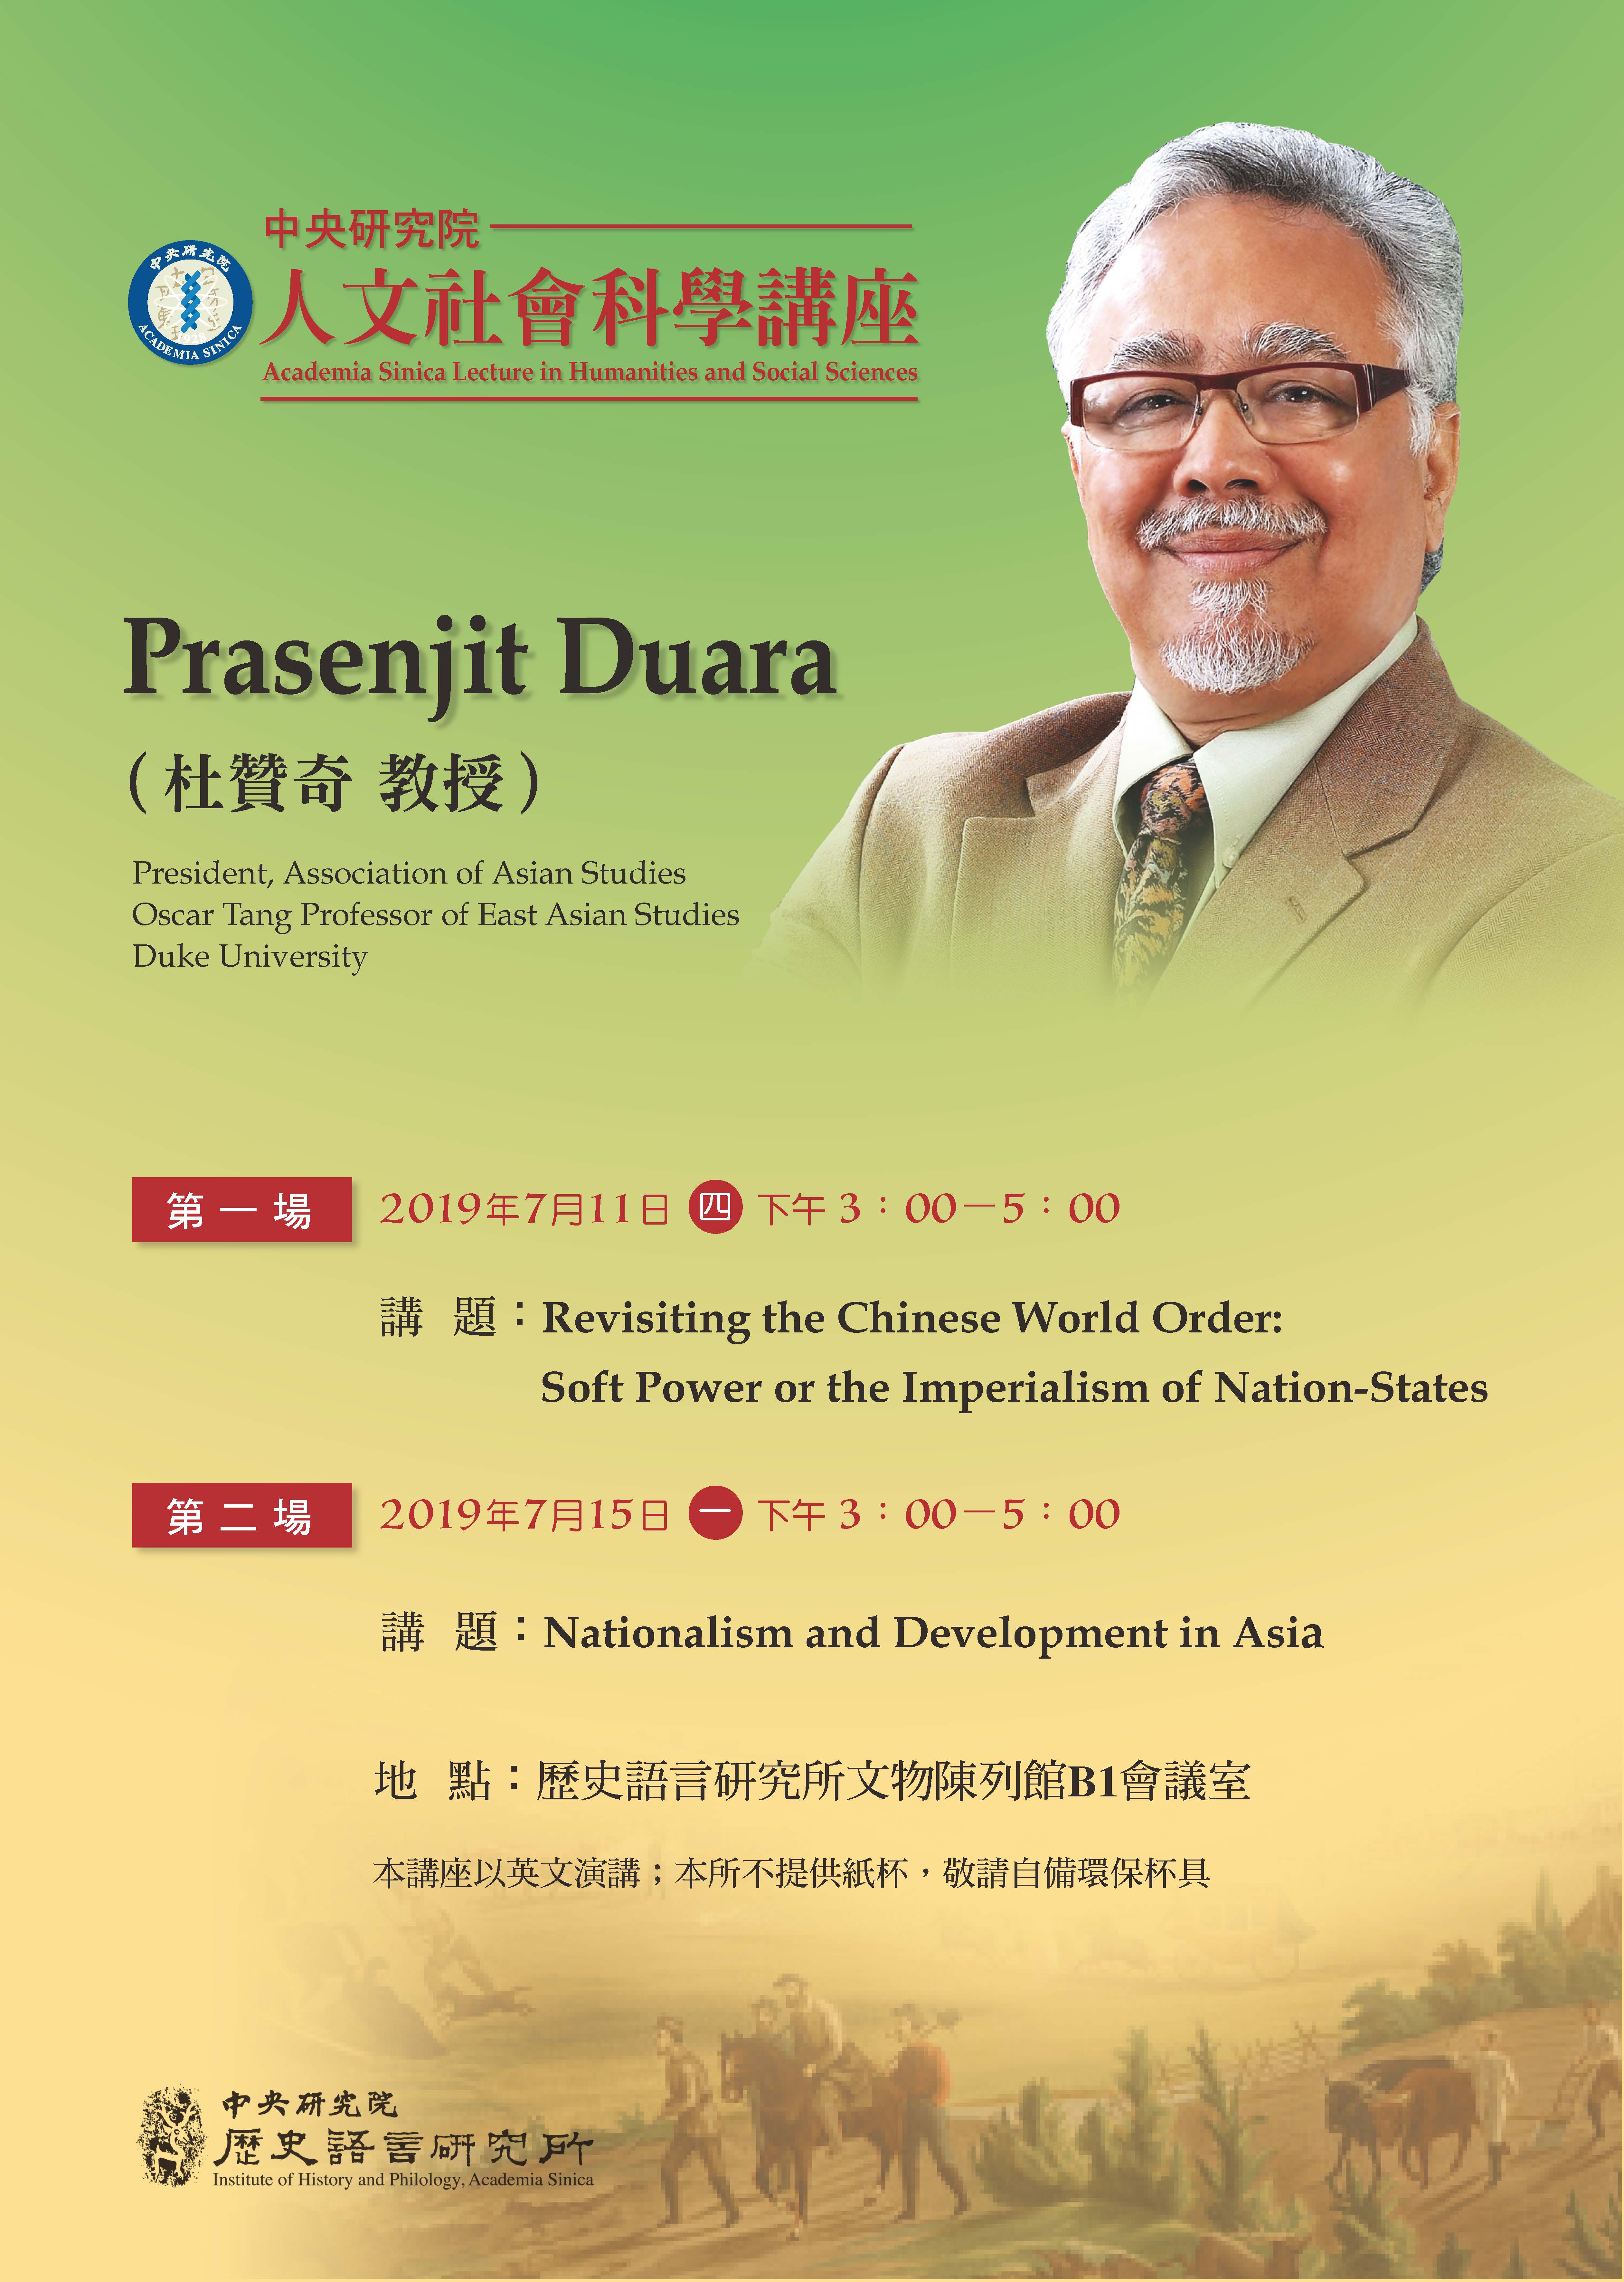 杜贊奇教授（Dr. Prasenjit Duara）應邀擔任2019年本院「人文社會科學講座」